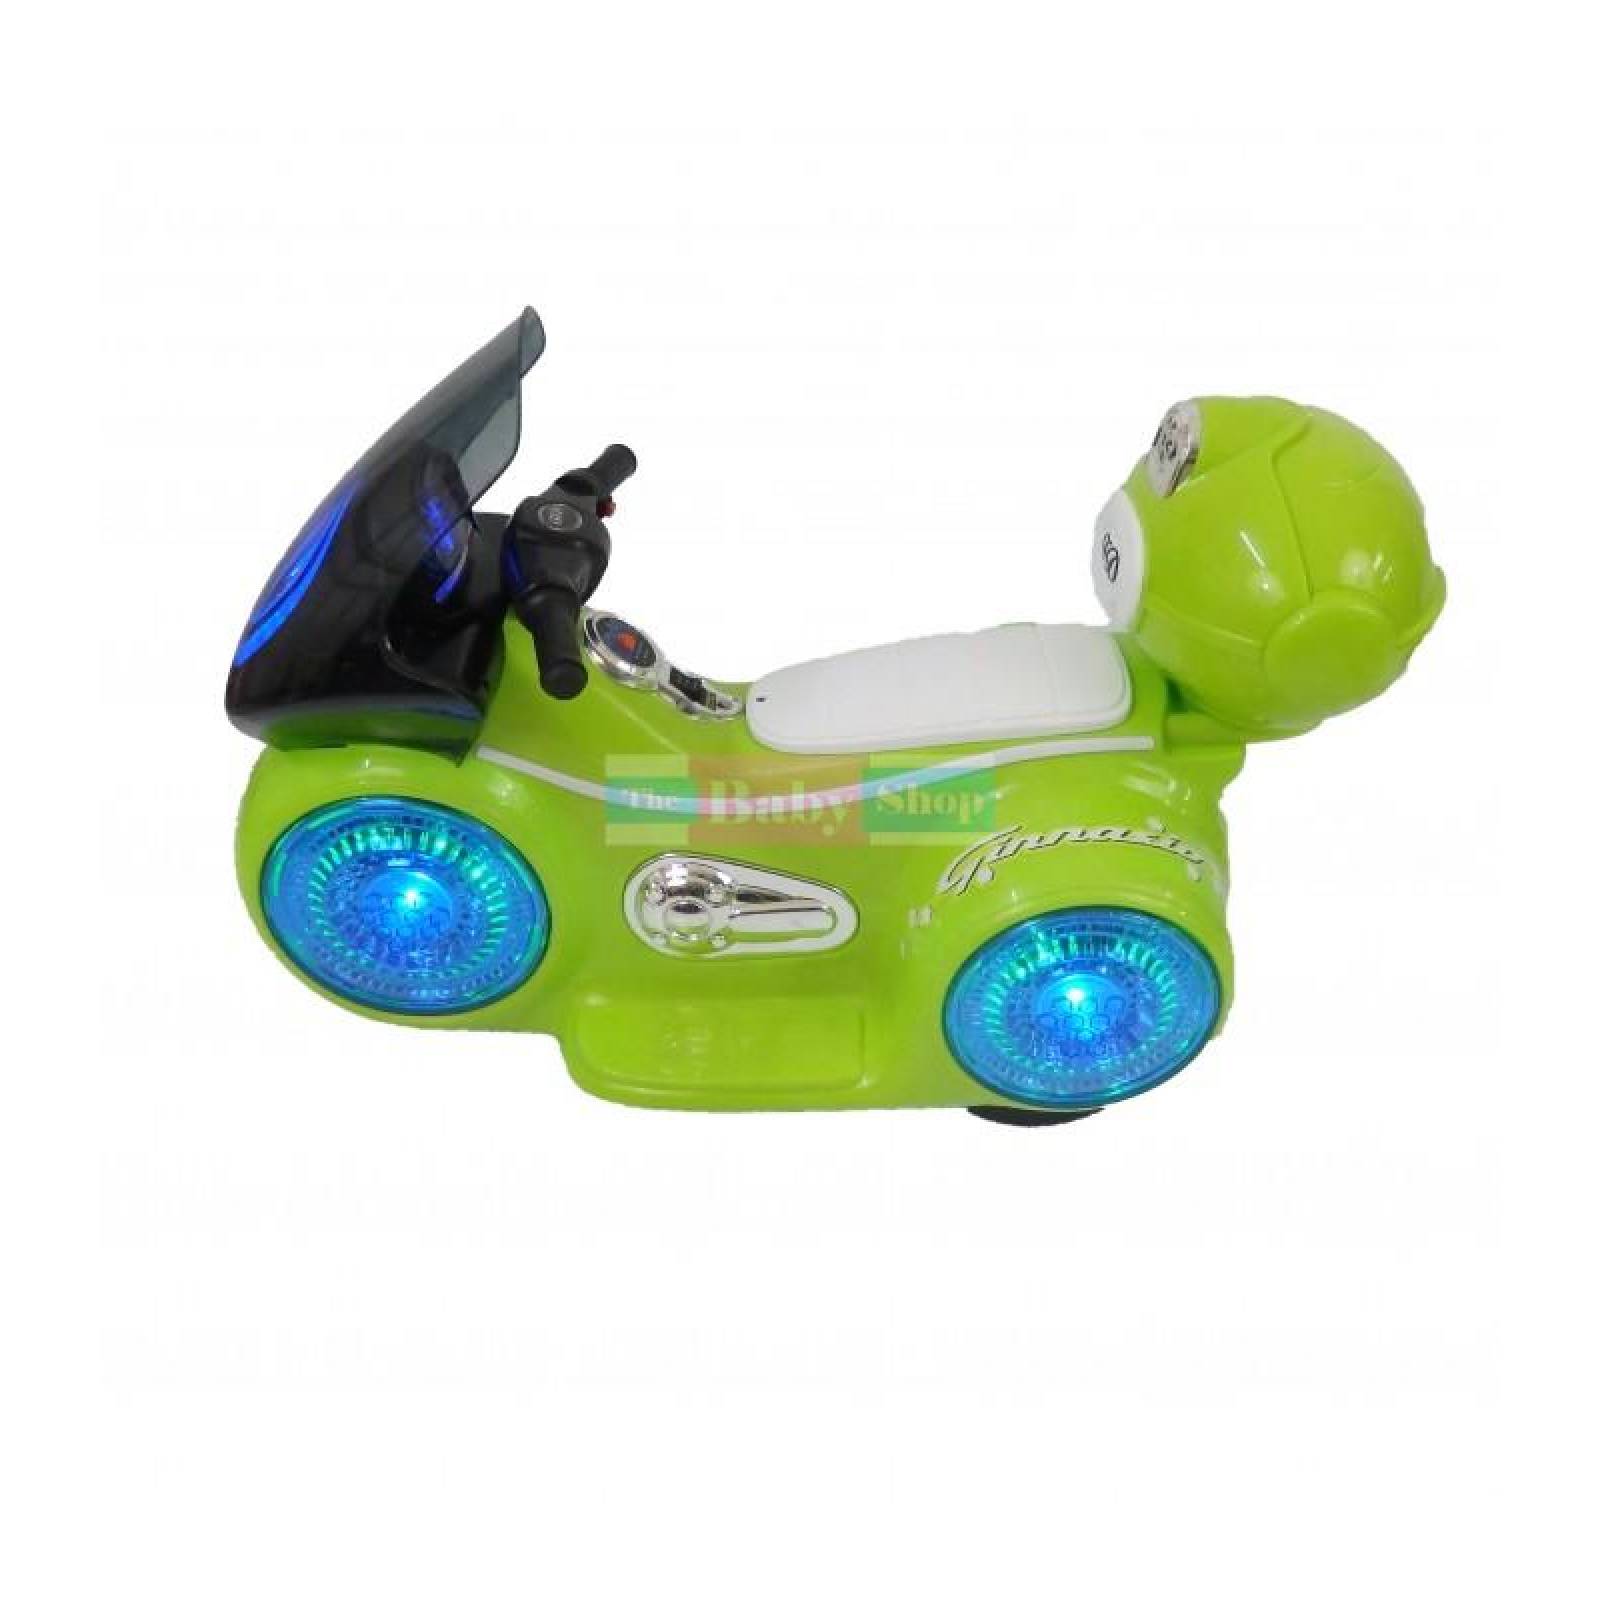 Motocicleta deportiva eléctrica con sonido y led para niños Verde